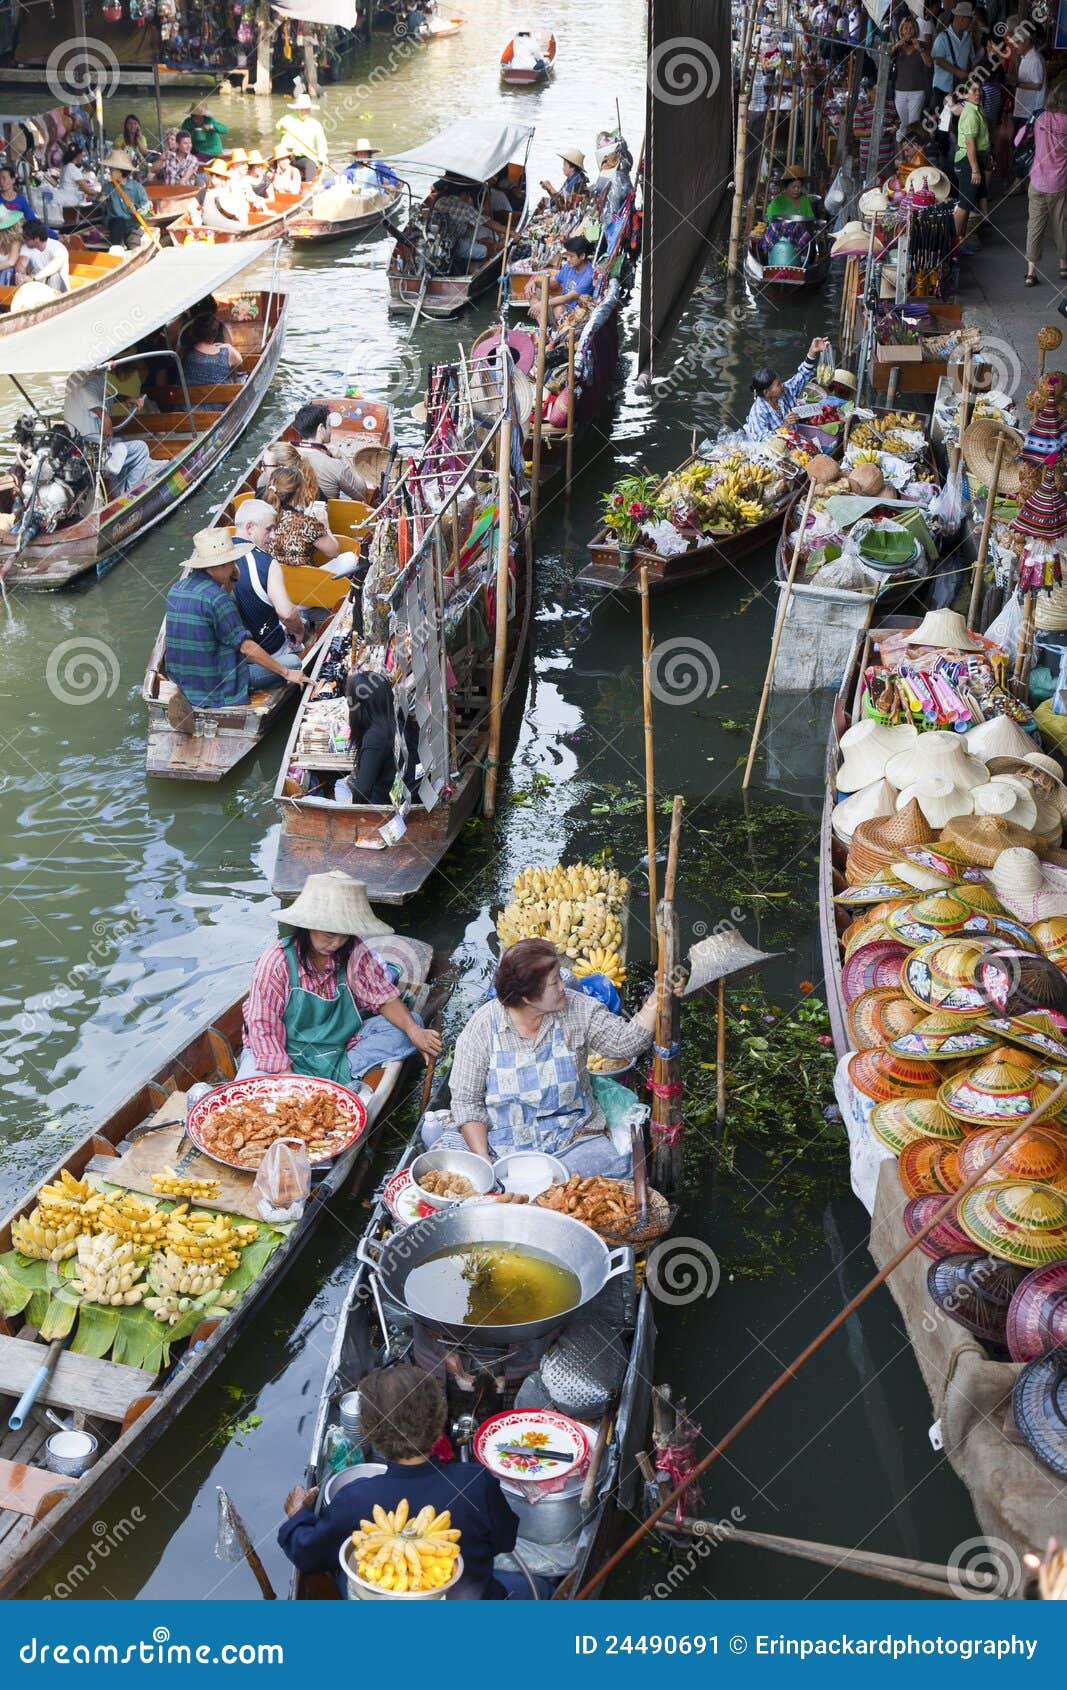 плавая место рынка. Bangkok damnoen плавая рынок товаров около saduak продавая поставщиков Таиланда